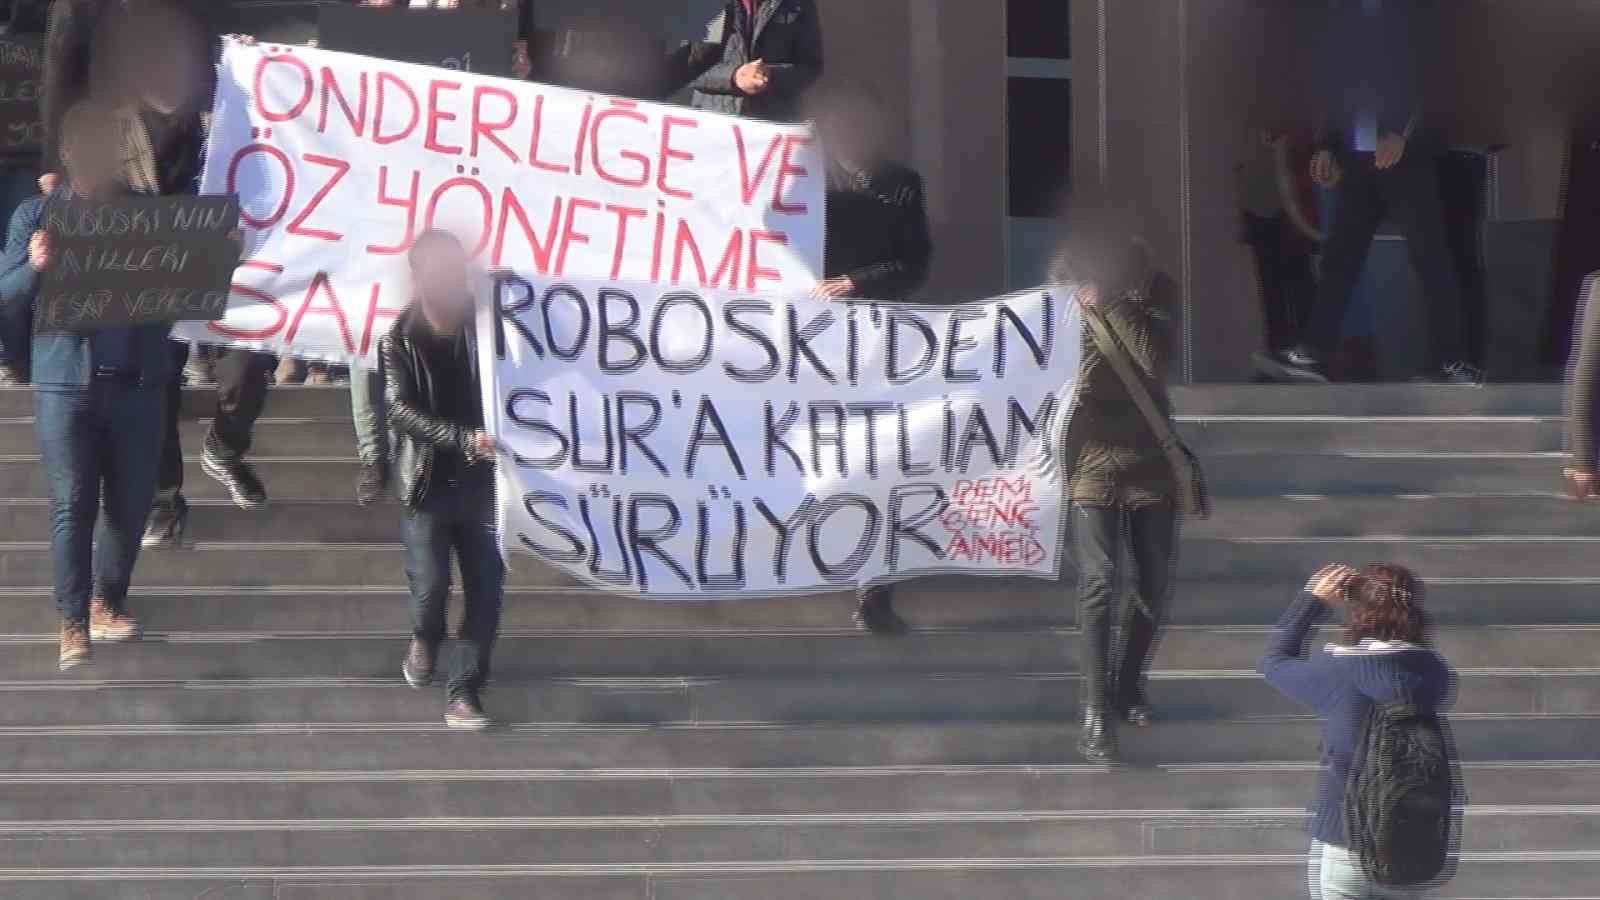 Dicle Üniversitesi’nde terör propagandasına operasyon: 4 gözaltı #diyarbakir